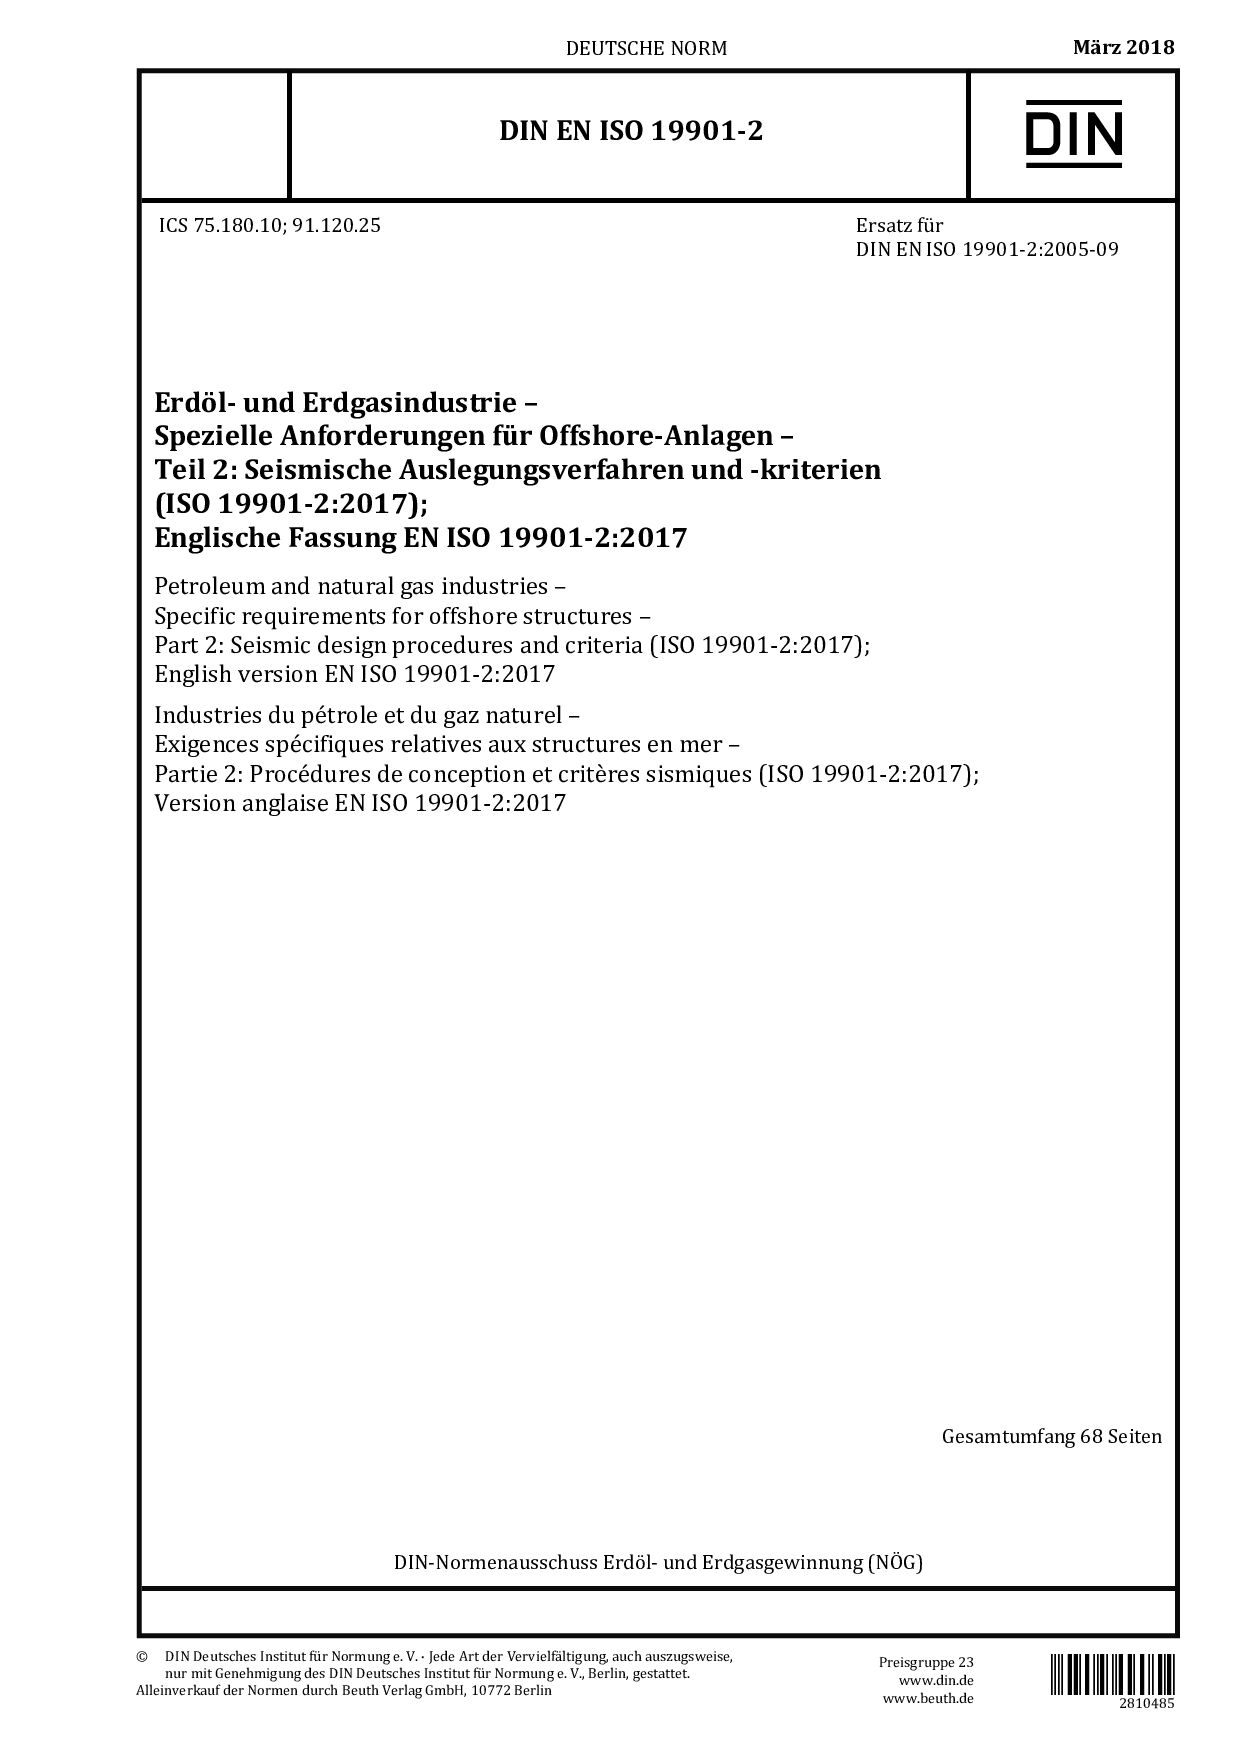 DIN EN ISO 19901-2:2018封面图